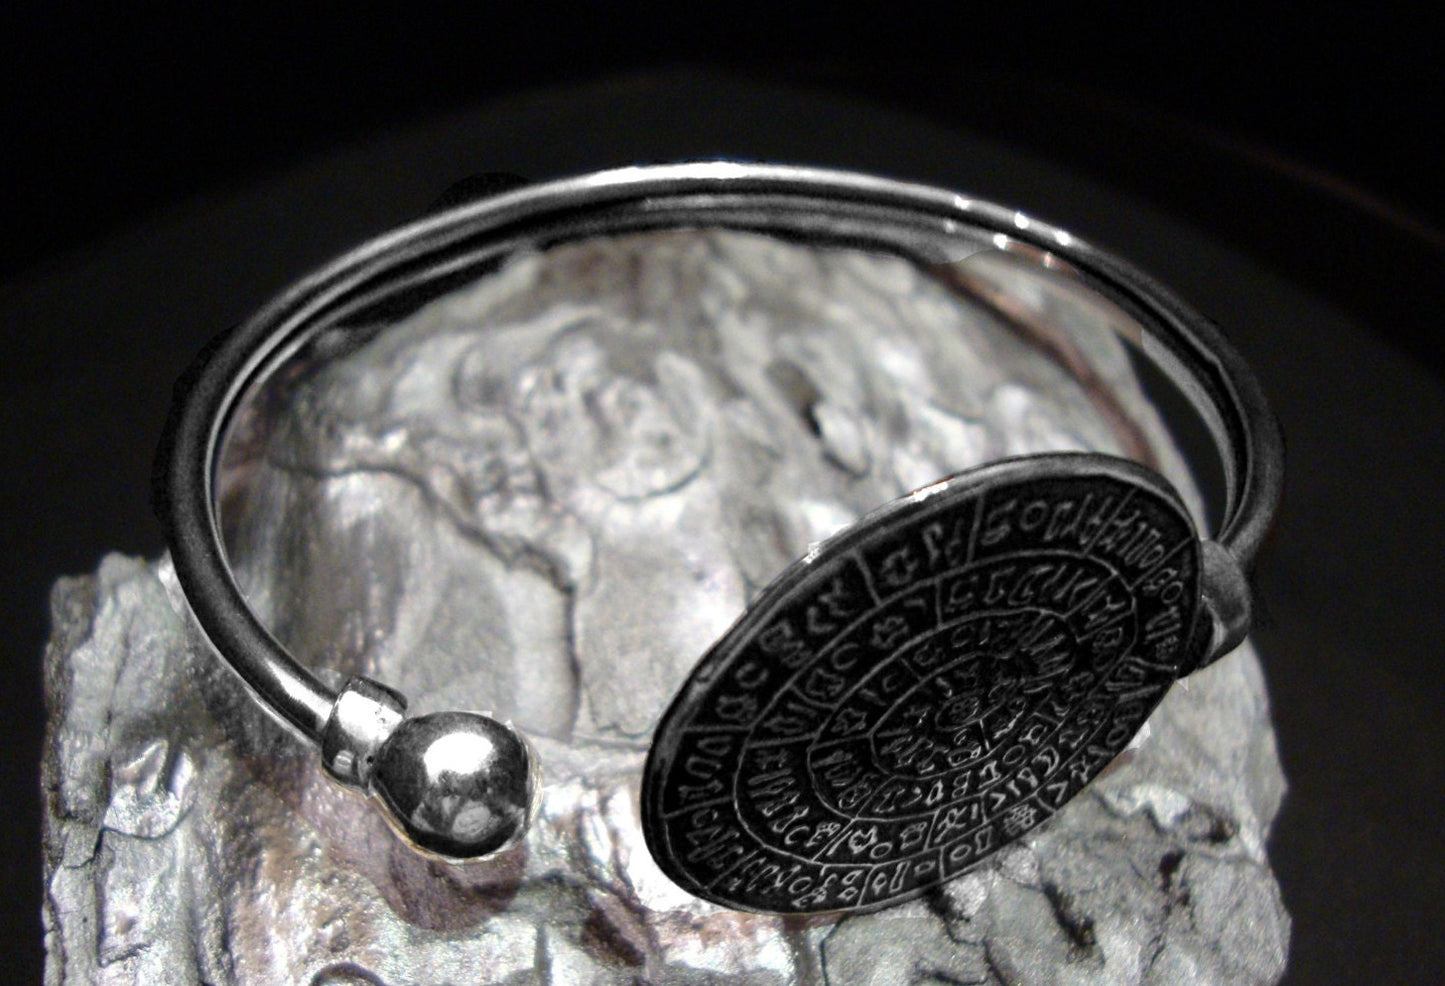 Diskos von Phaistos Armreif Silberarmband, Schmuck aus Griechenland, Diskus von Phaistos, griechischer Schmuck, griechisches Armband, Kreta, Kunst